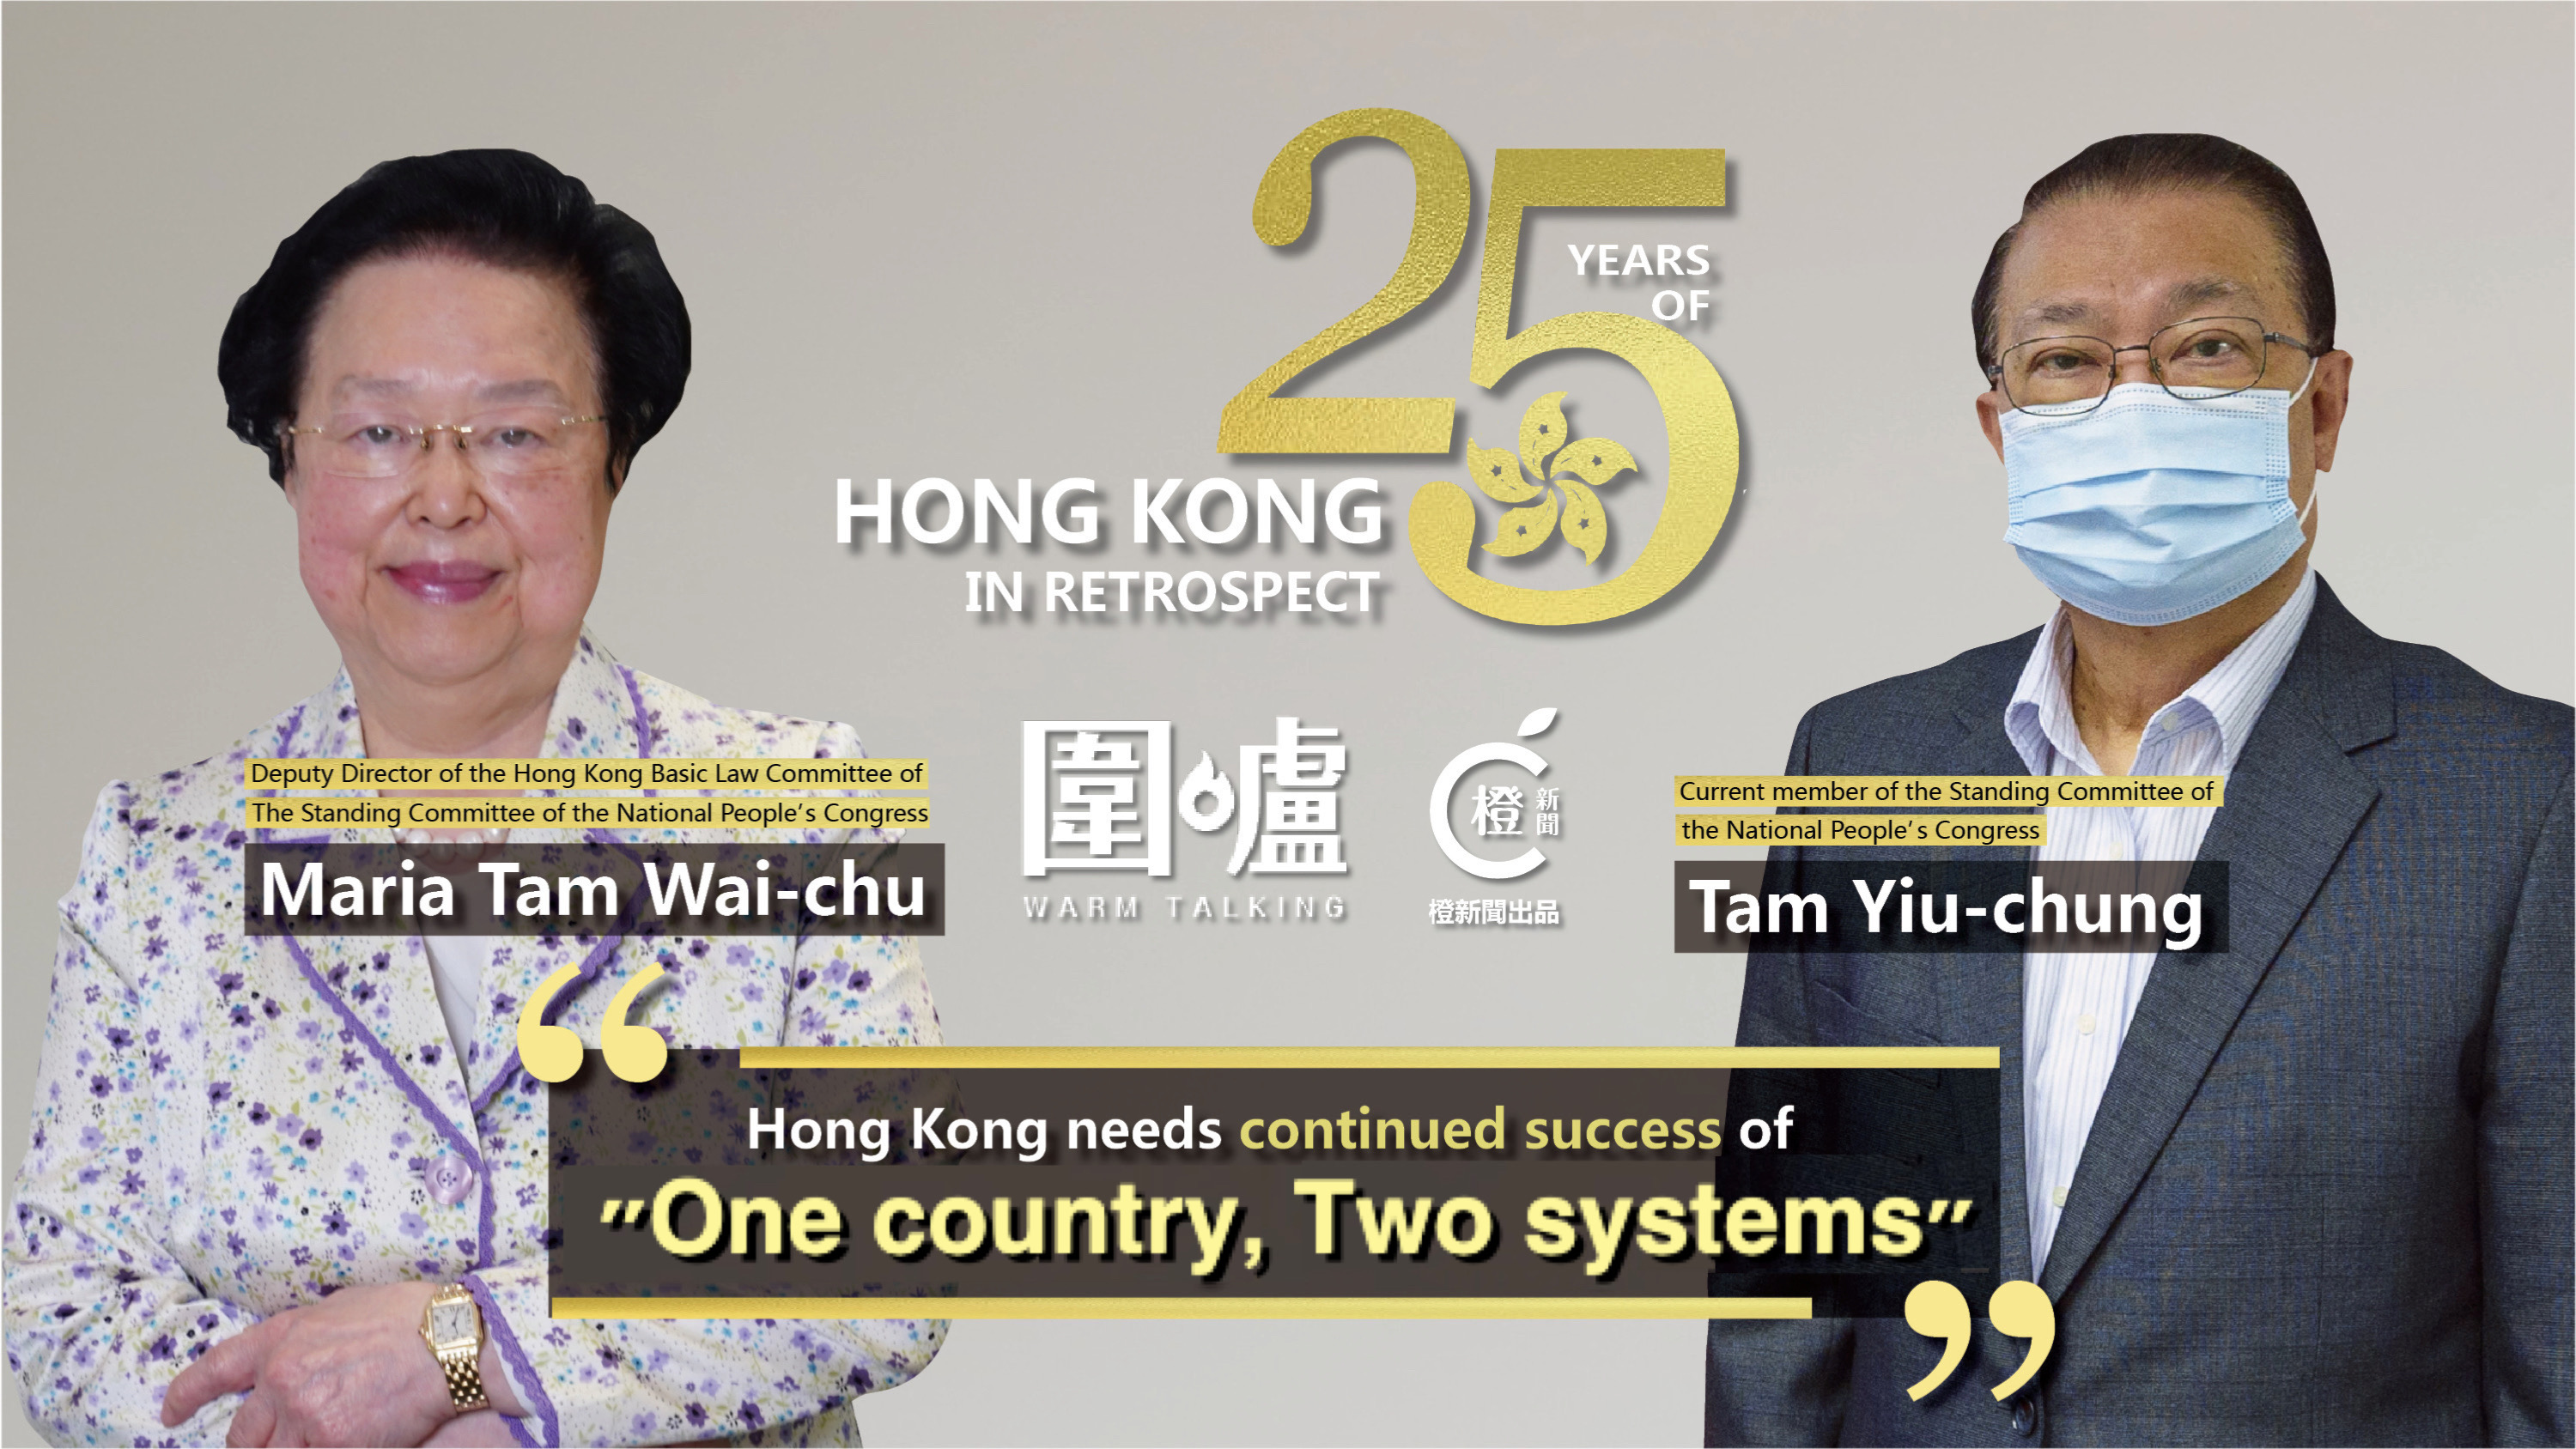 25 Years of HK in Retrospect｜Tam Yiu-chung & Tam Wai-chu